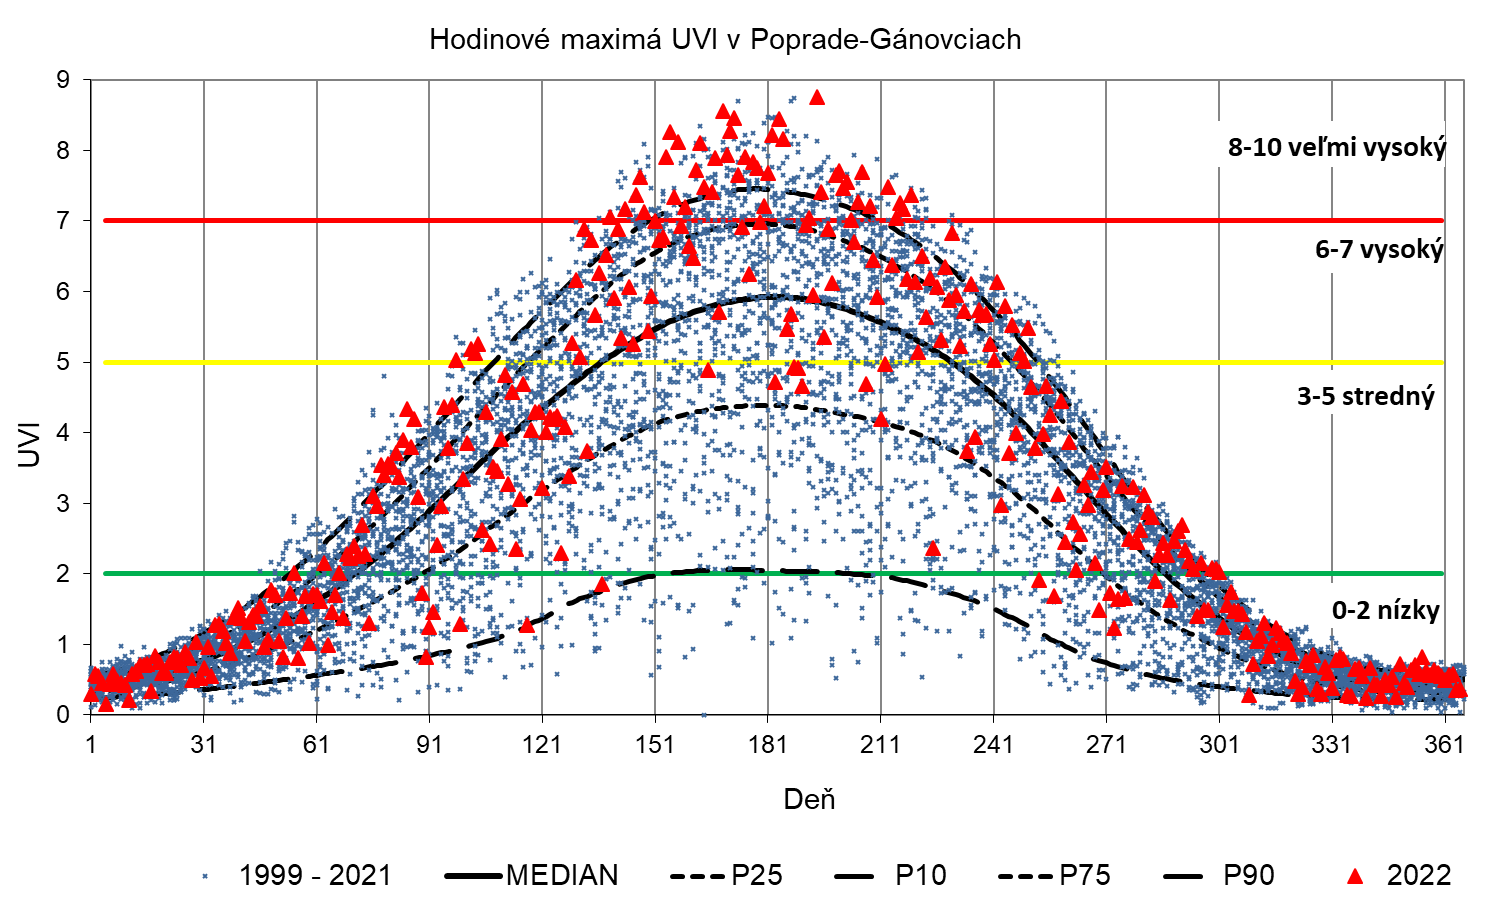 Obrázok 6. Maximálne hodinové priemery UVI v Bratislave (hore) za obdobie 1997 – 2021 a v Gánovciach (dolu) za obdobie 1999 – 2021 (modrá značka) a v roku 2022 (červené značky), vyjadrené vzhľadom na zhladený MEDIÁN (medián predstavuje limit, pri ktorom sa vyššie aj nižšie hodnoty ako medián vyskytujú s rovnakou pravdepodobnosťou 50%) a vybrané percentily P90, P75, P25 a P10 (pravdepodobnosť, že daný údaj prekročí hodnotu P90, je 10%, P75 je 25%,  pravdepodobnosť, že daný údaj bude menší ako hodnota P25, je 25% a  P10 je 10%). Štatistické charakteristiky sú za obdobie 2000 – 2019. V grafe sú vyznačené limity intervalov UVI, pre ktoré WHO odporúča príslušný stupeň ochrany pred slnečným UV žiarením.